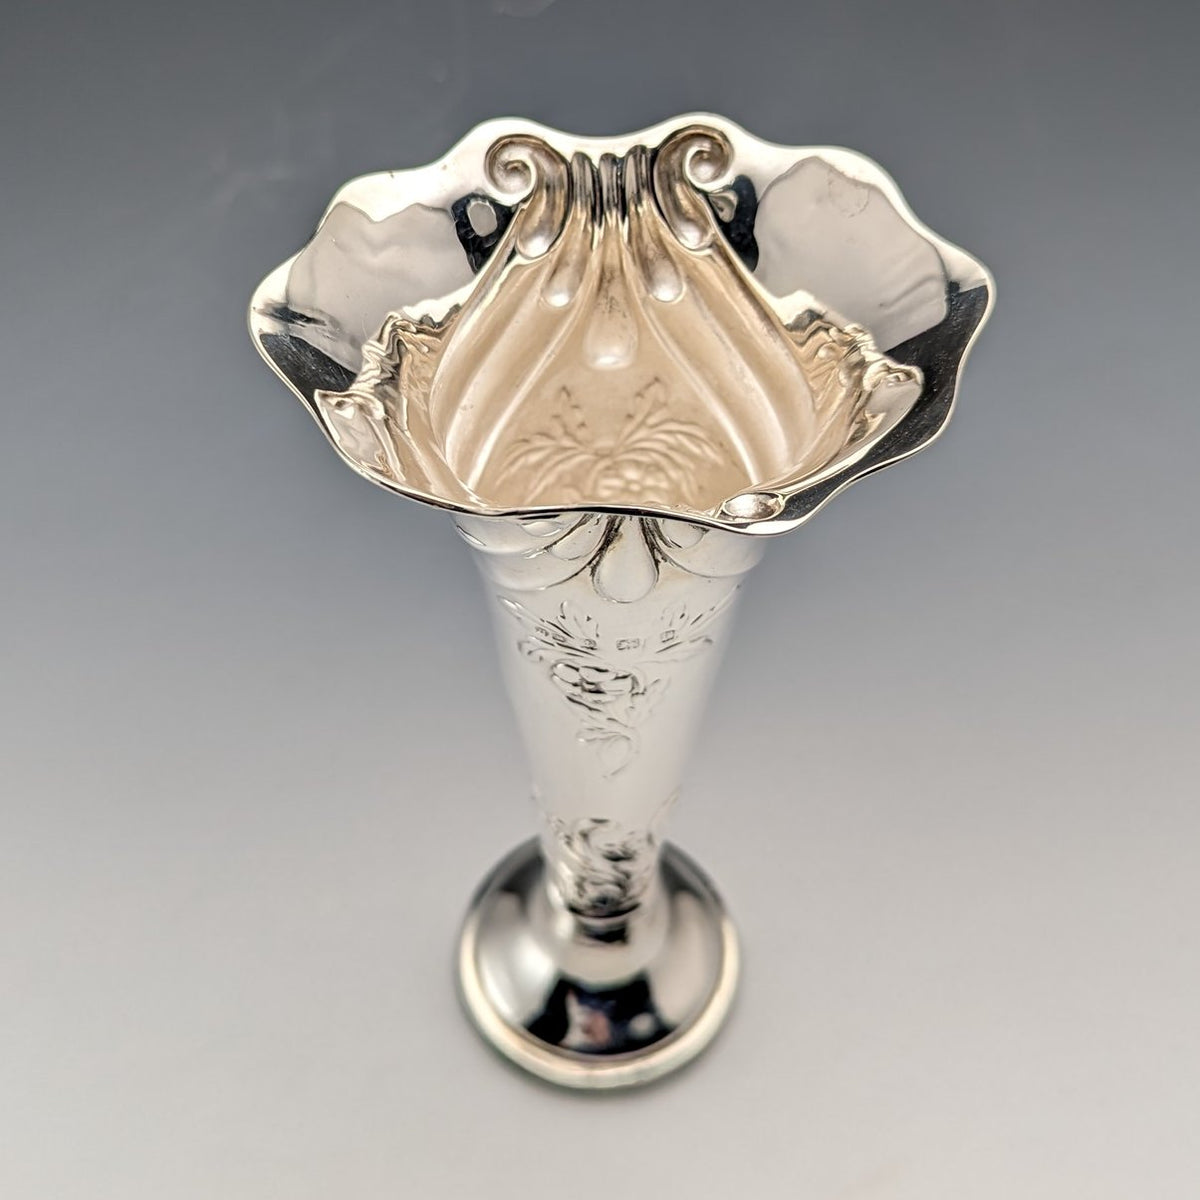 1903年 英国アンティーク 純銀製 花瓶 一輪挿し 134g Henry Matthews 